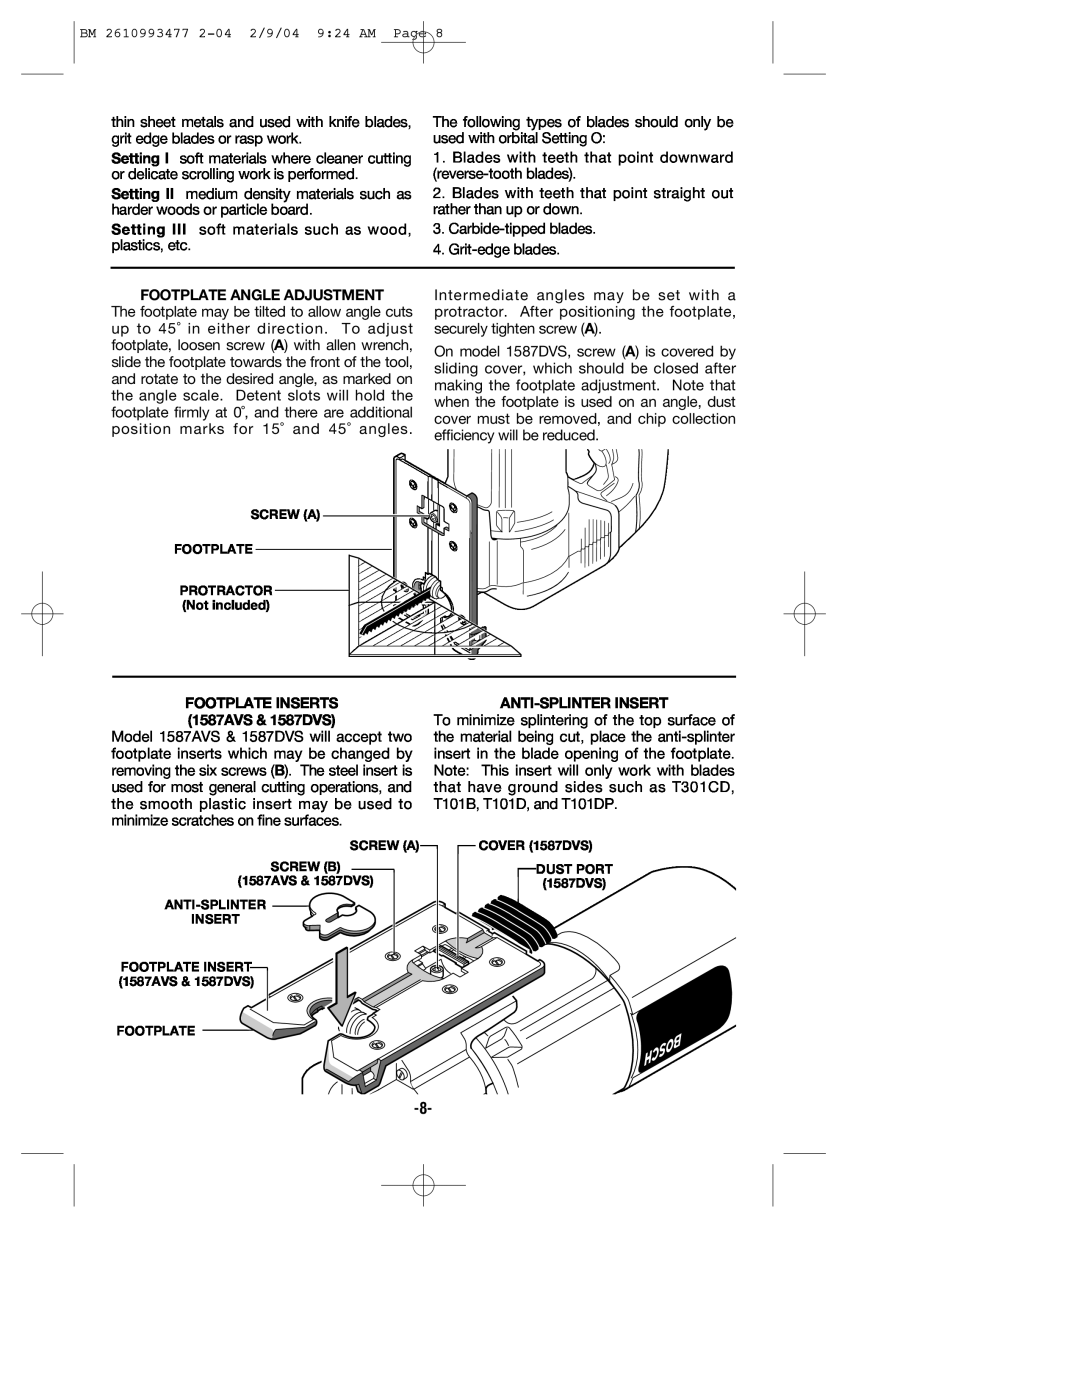 Bosch Power Tools 1587VS manual Footplate Angle Adjustment, FOOTPLATE INSERTS 1587AVS & 1587DVS, Anti-Splinter Insert 